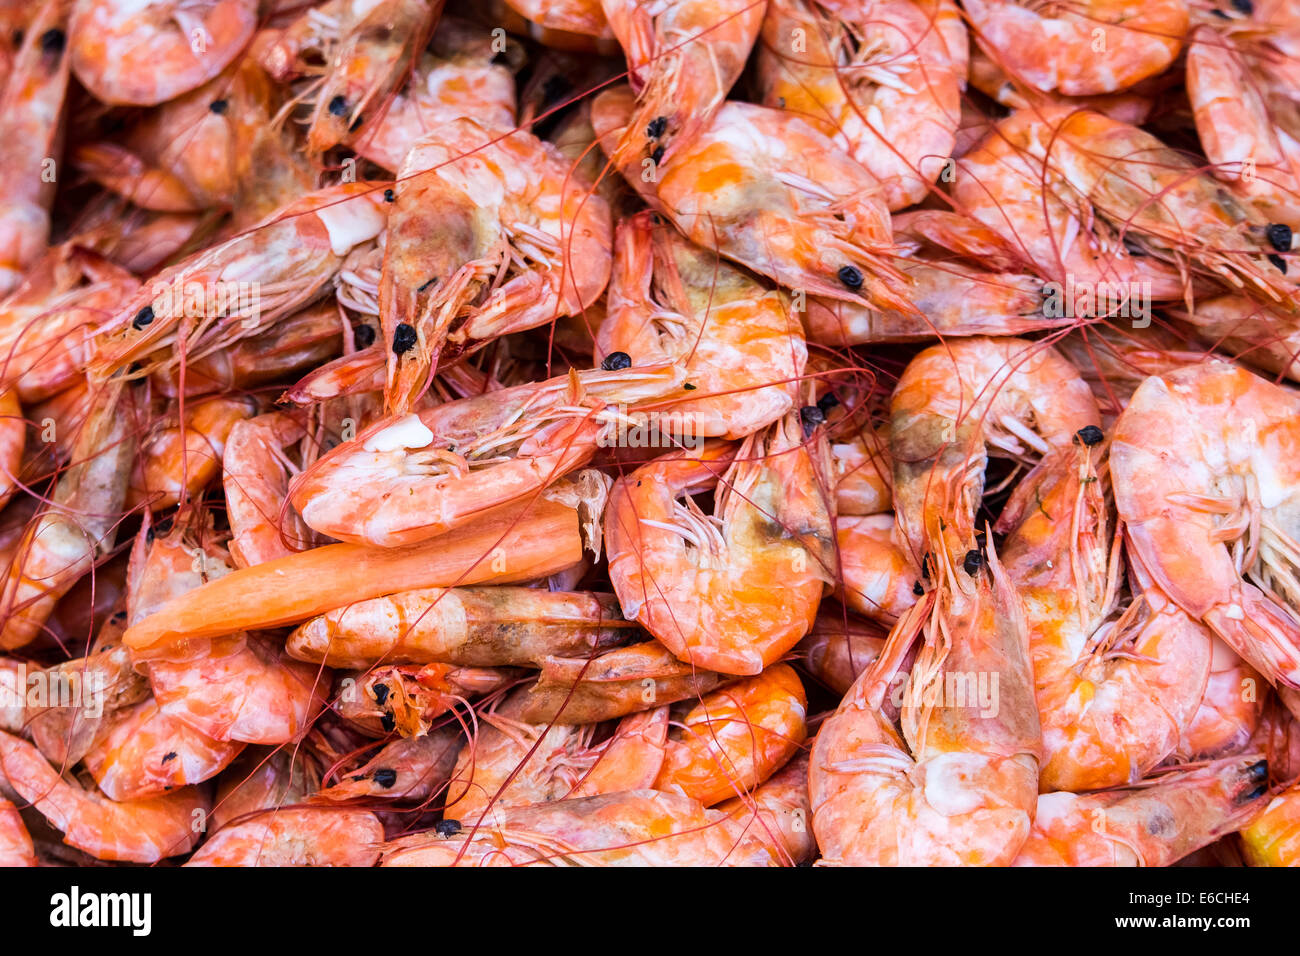 Crevettes cuites, de fruits de mer délicieux et sains. Les crevettes sont des crustacés (comme les homards et crabes) Banque D'Images